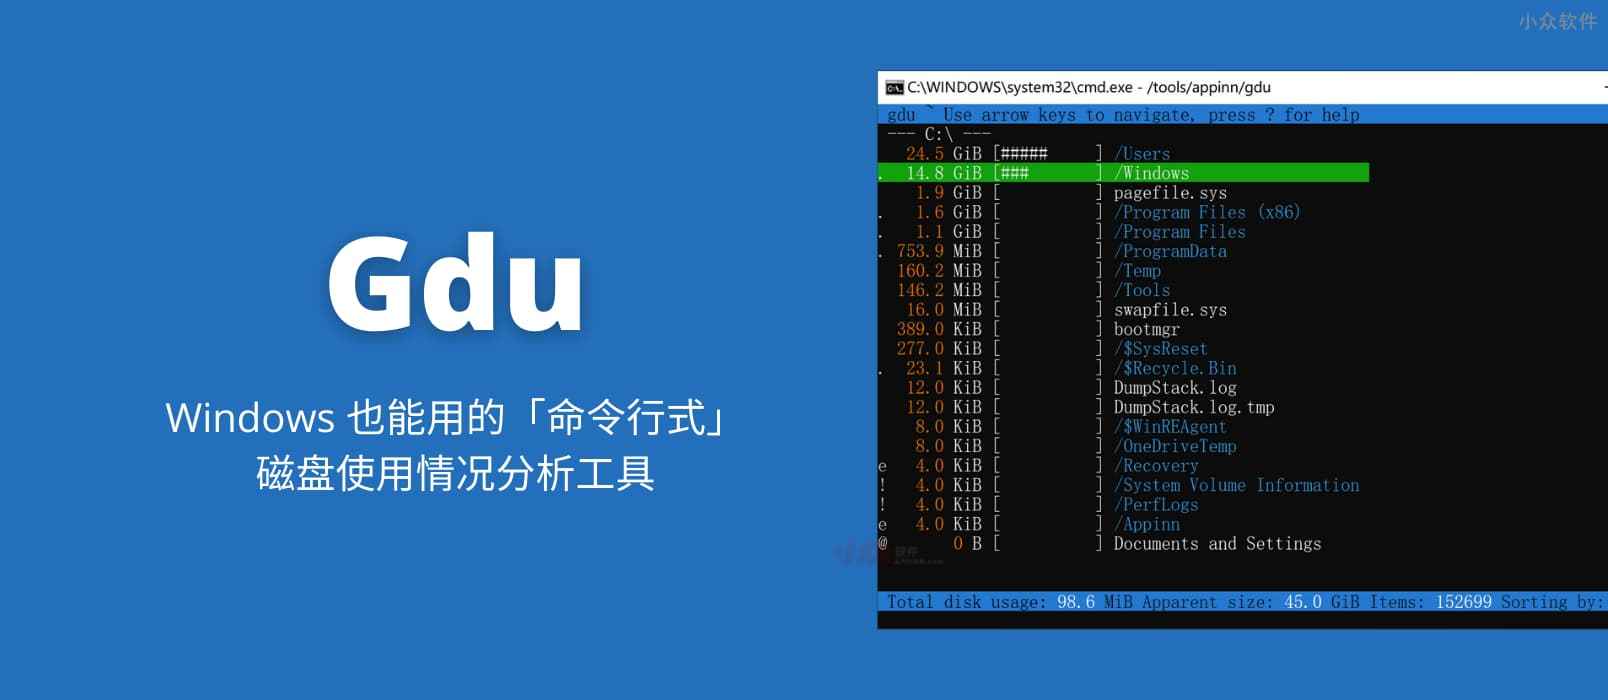 Gdu - Windows 也能用的「命令行式」磁盘使用情况分析工具